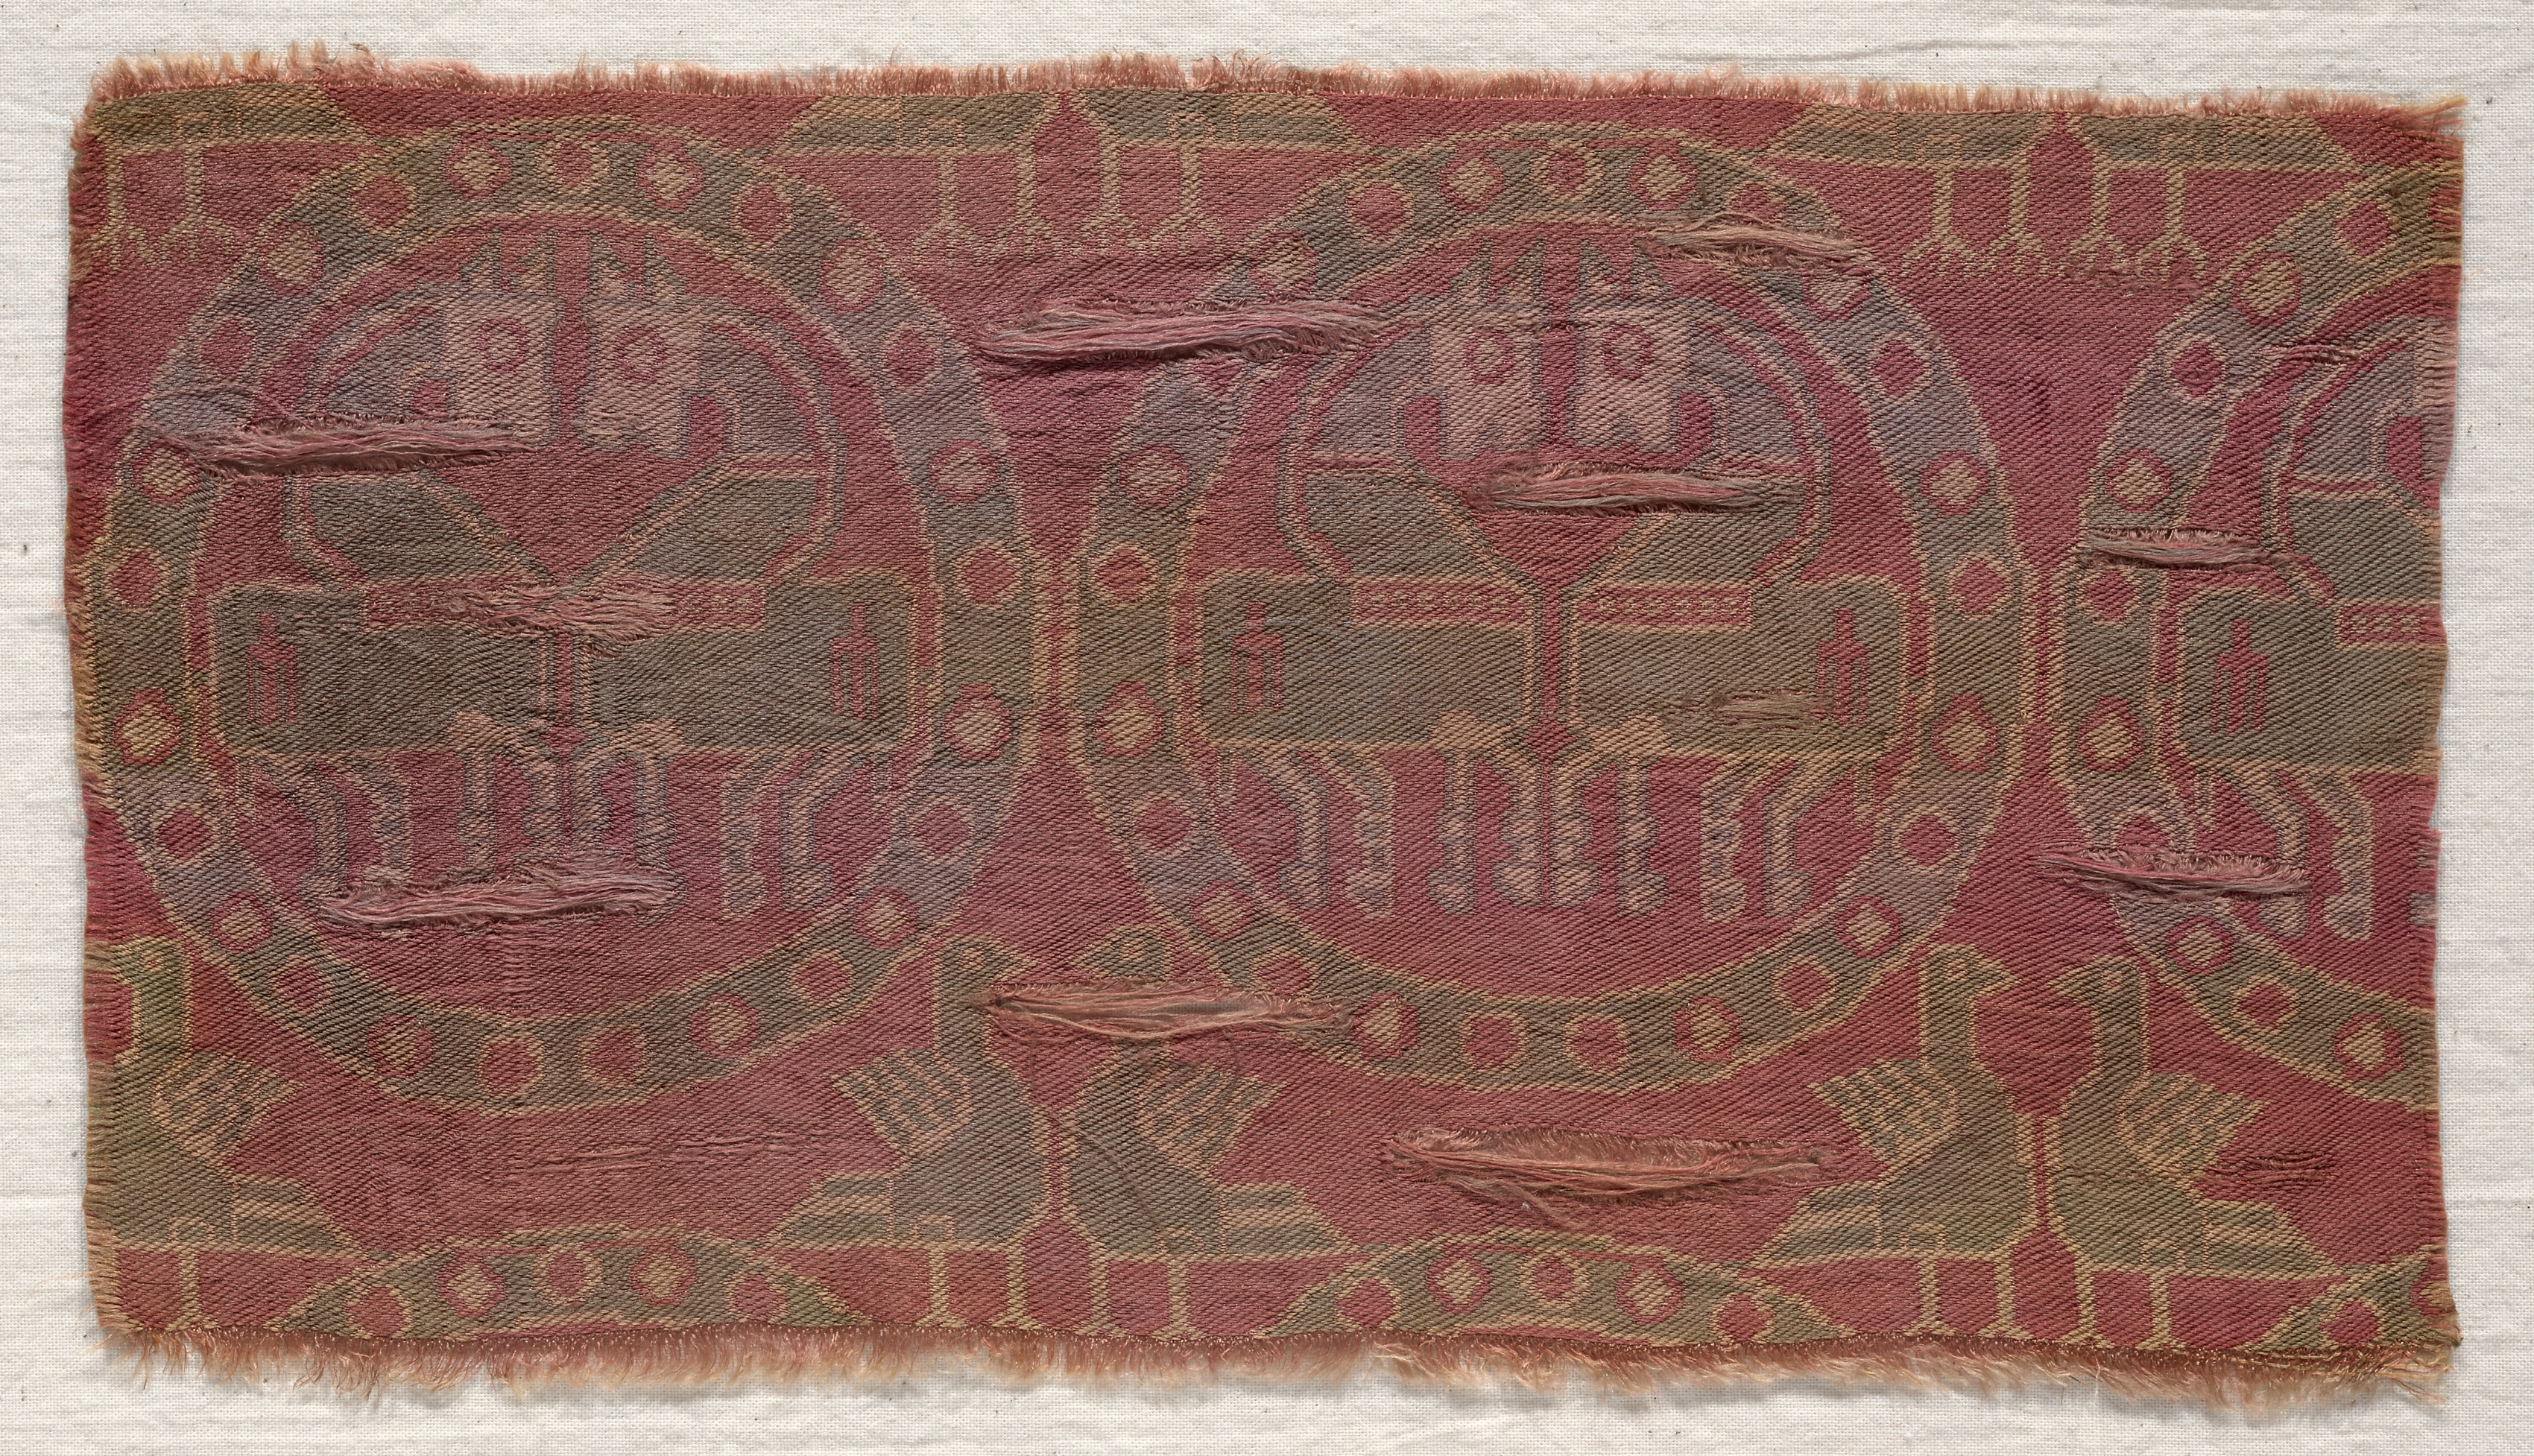 Copy of a Persian Textile